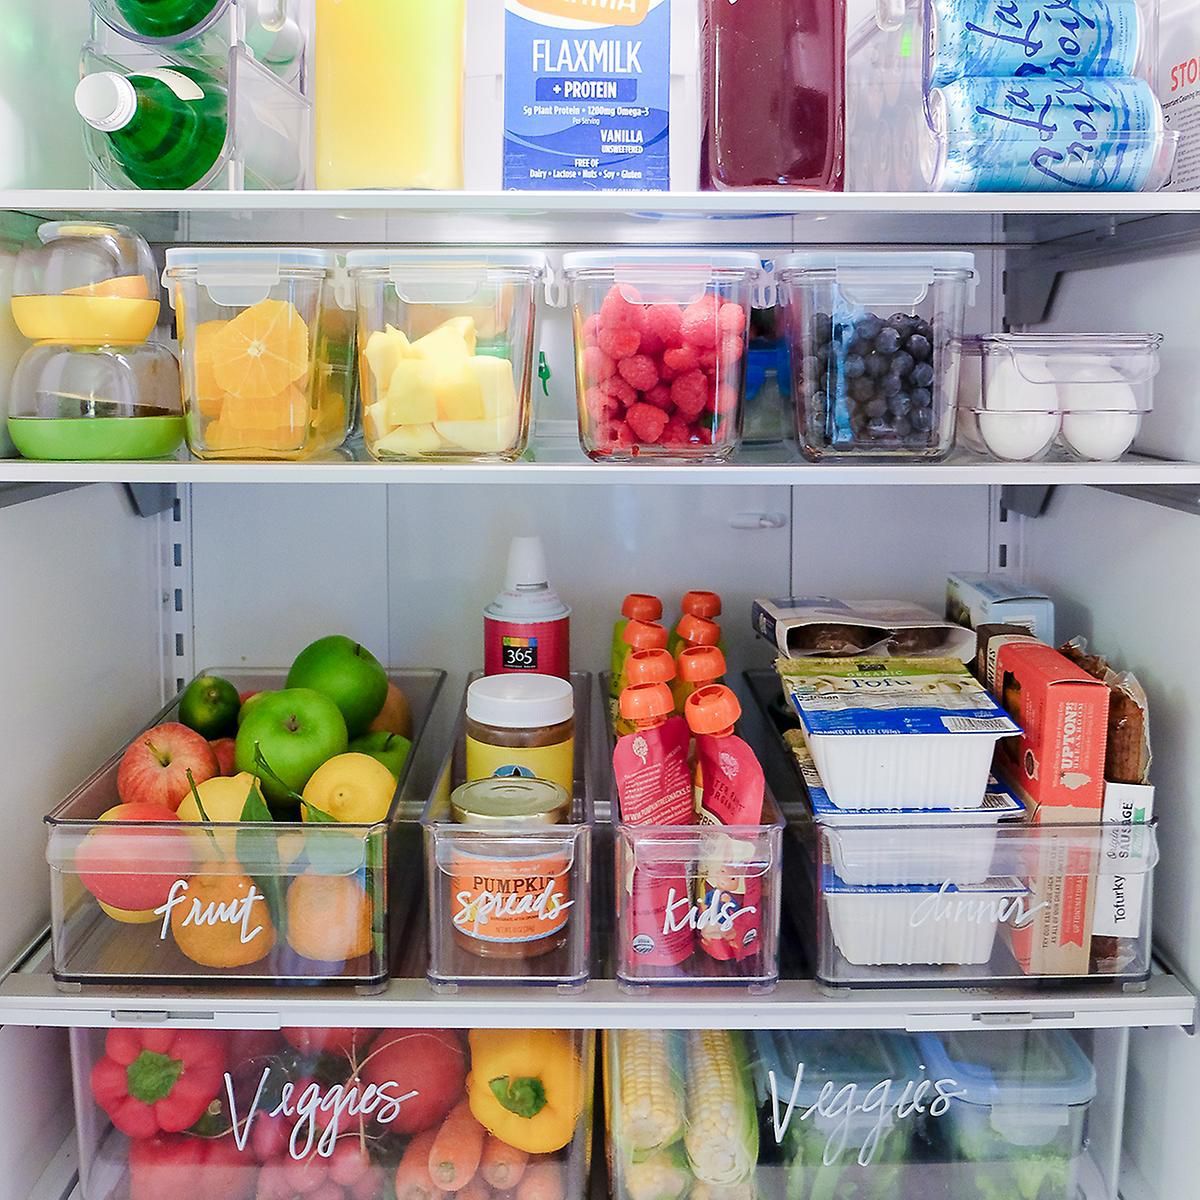 расположение продуктов на полках холодильника